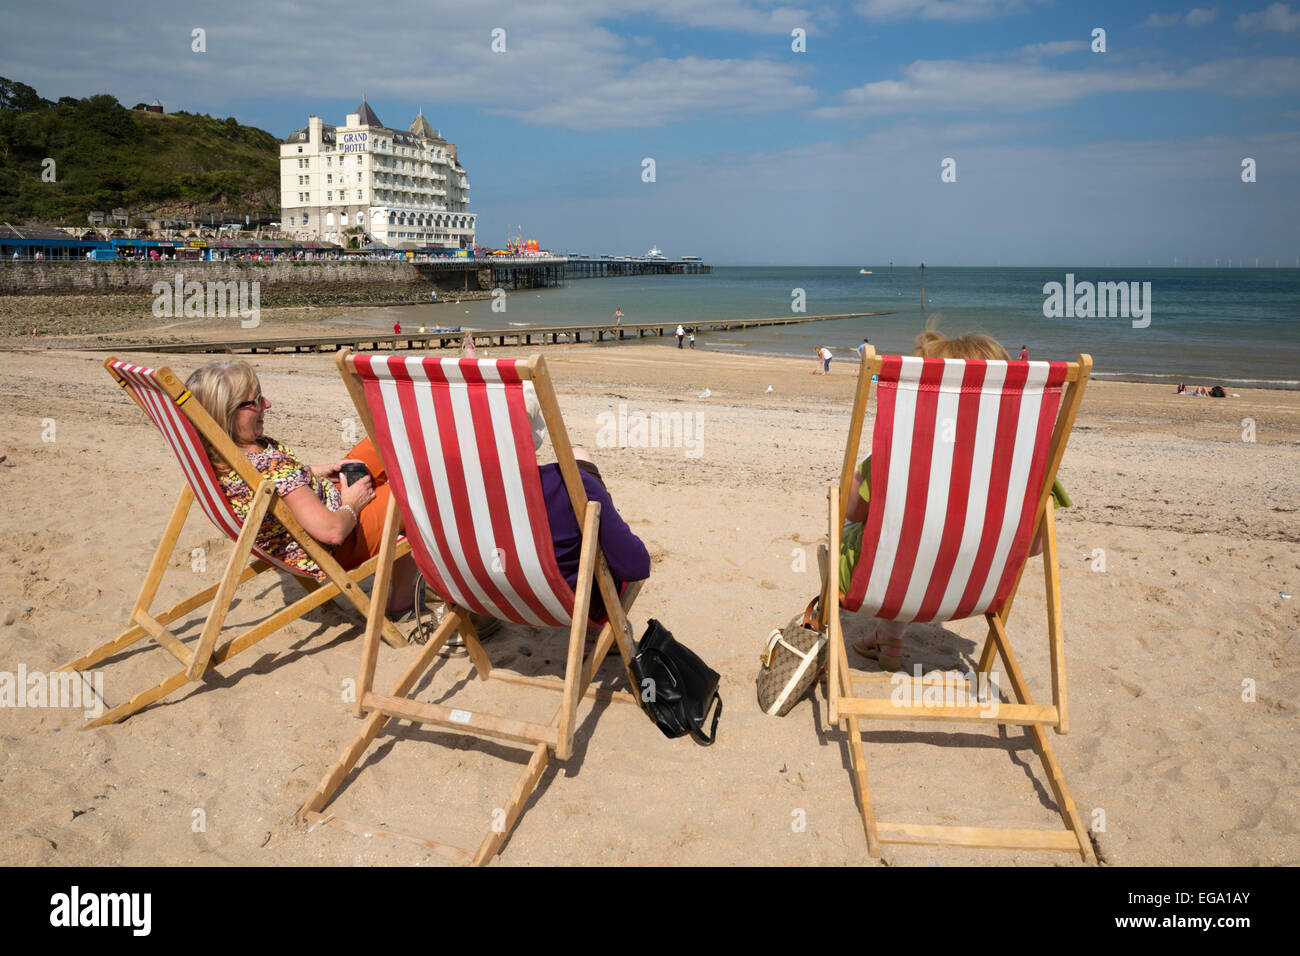 Liegestühle am Strand mit dem Grand Hotel, Llandudno, Conwy, Wales, Vereinigtes Königreich, Europa Stockfoto